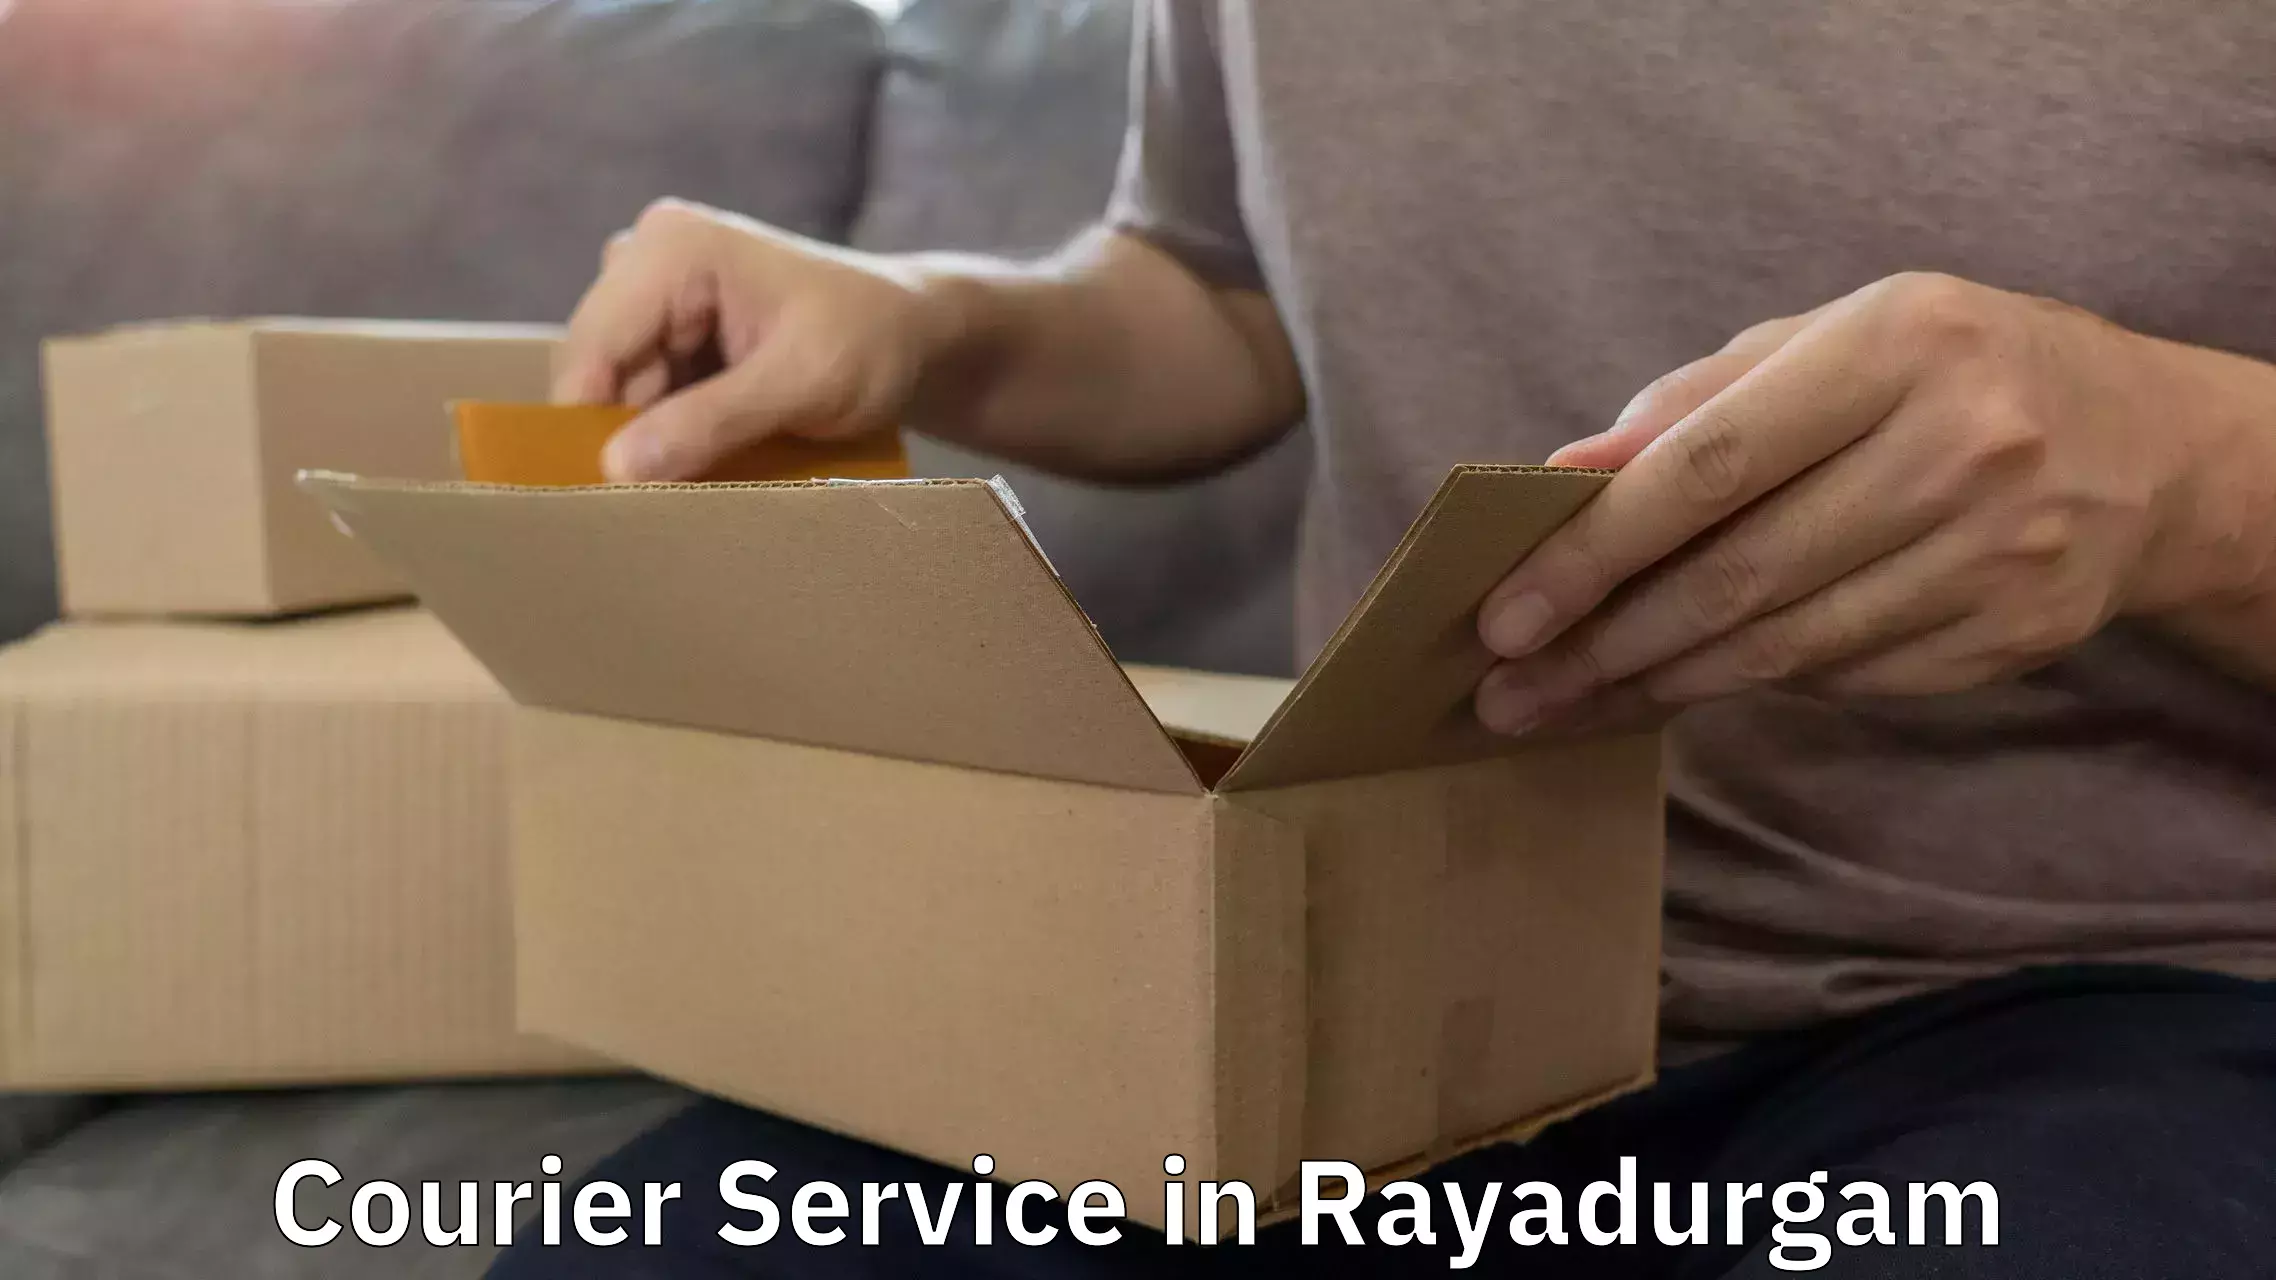 High-capacity shipping options in Rayadurgam